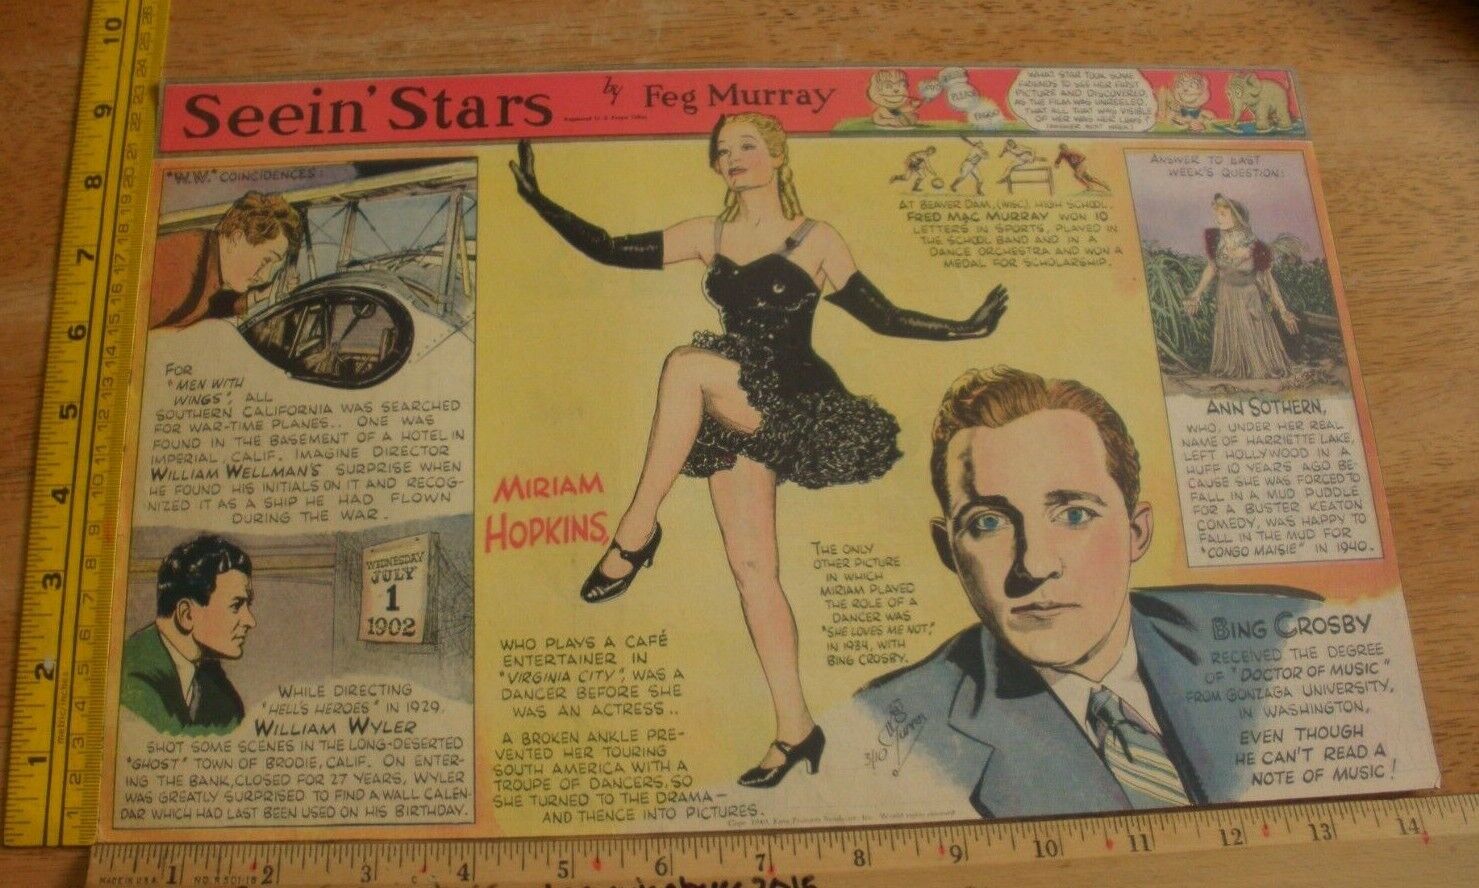 Miriam Hopkins Ann Sothern Bing Crosby Seein\' Stars Feg Murray 1939 panel ai